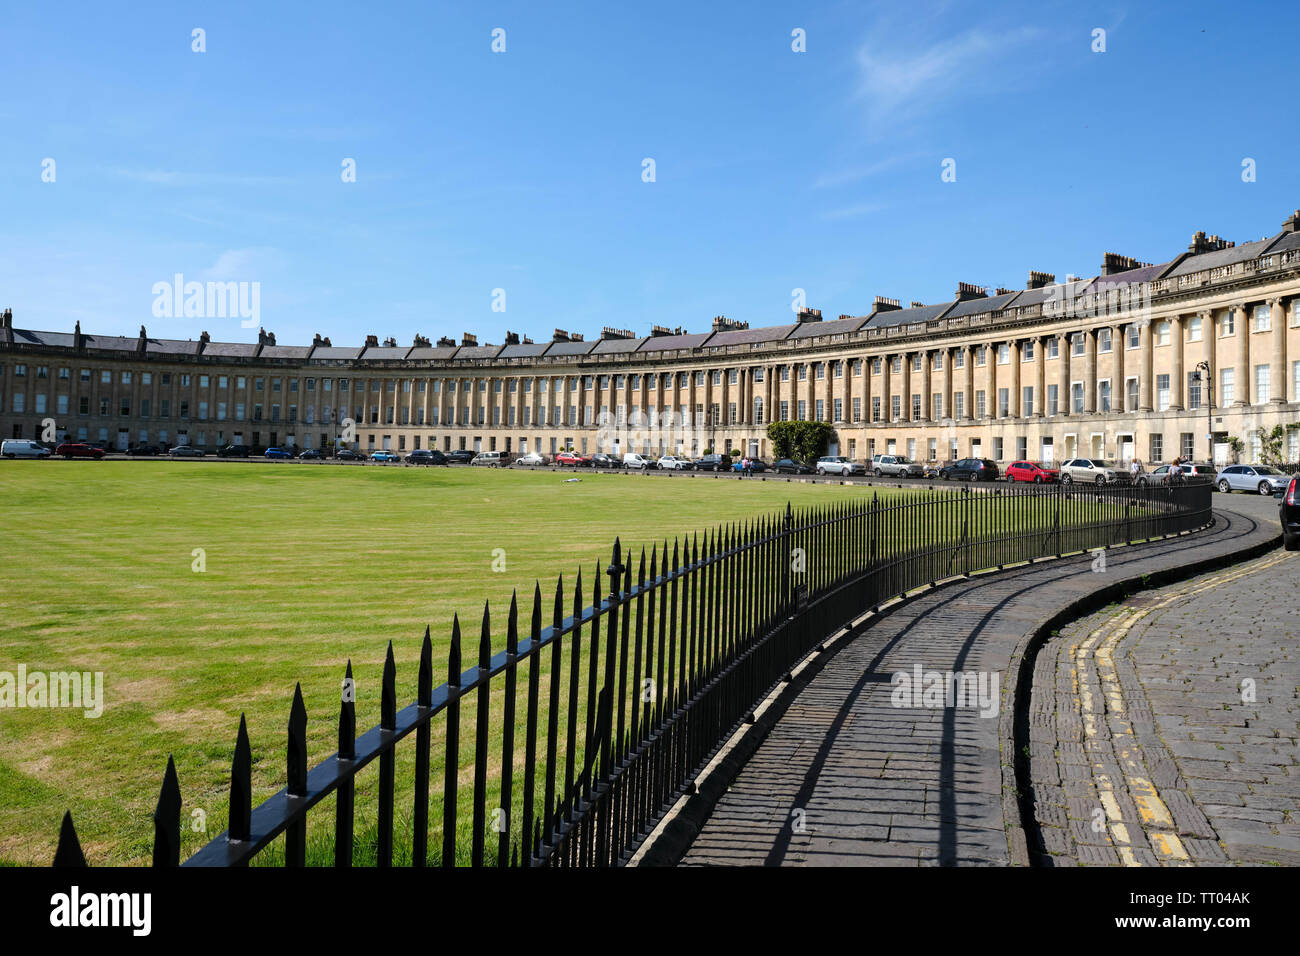 Royal Crescent, Bath, England, UK. Die vom Architekten John Wood die Jüngeren im palladianischen Stil gestaltet. Stockfoto